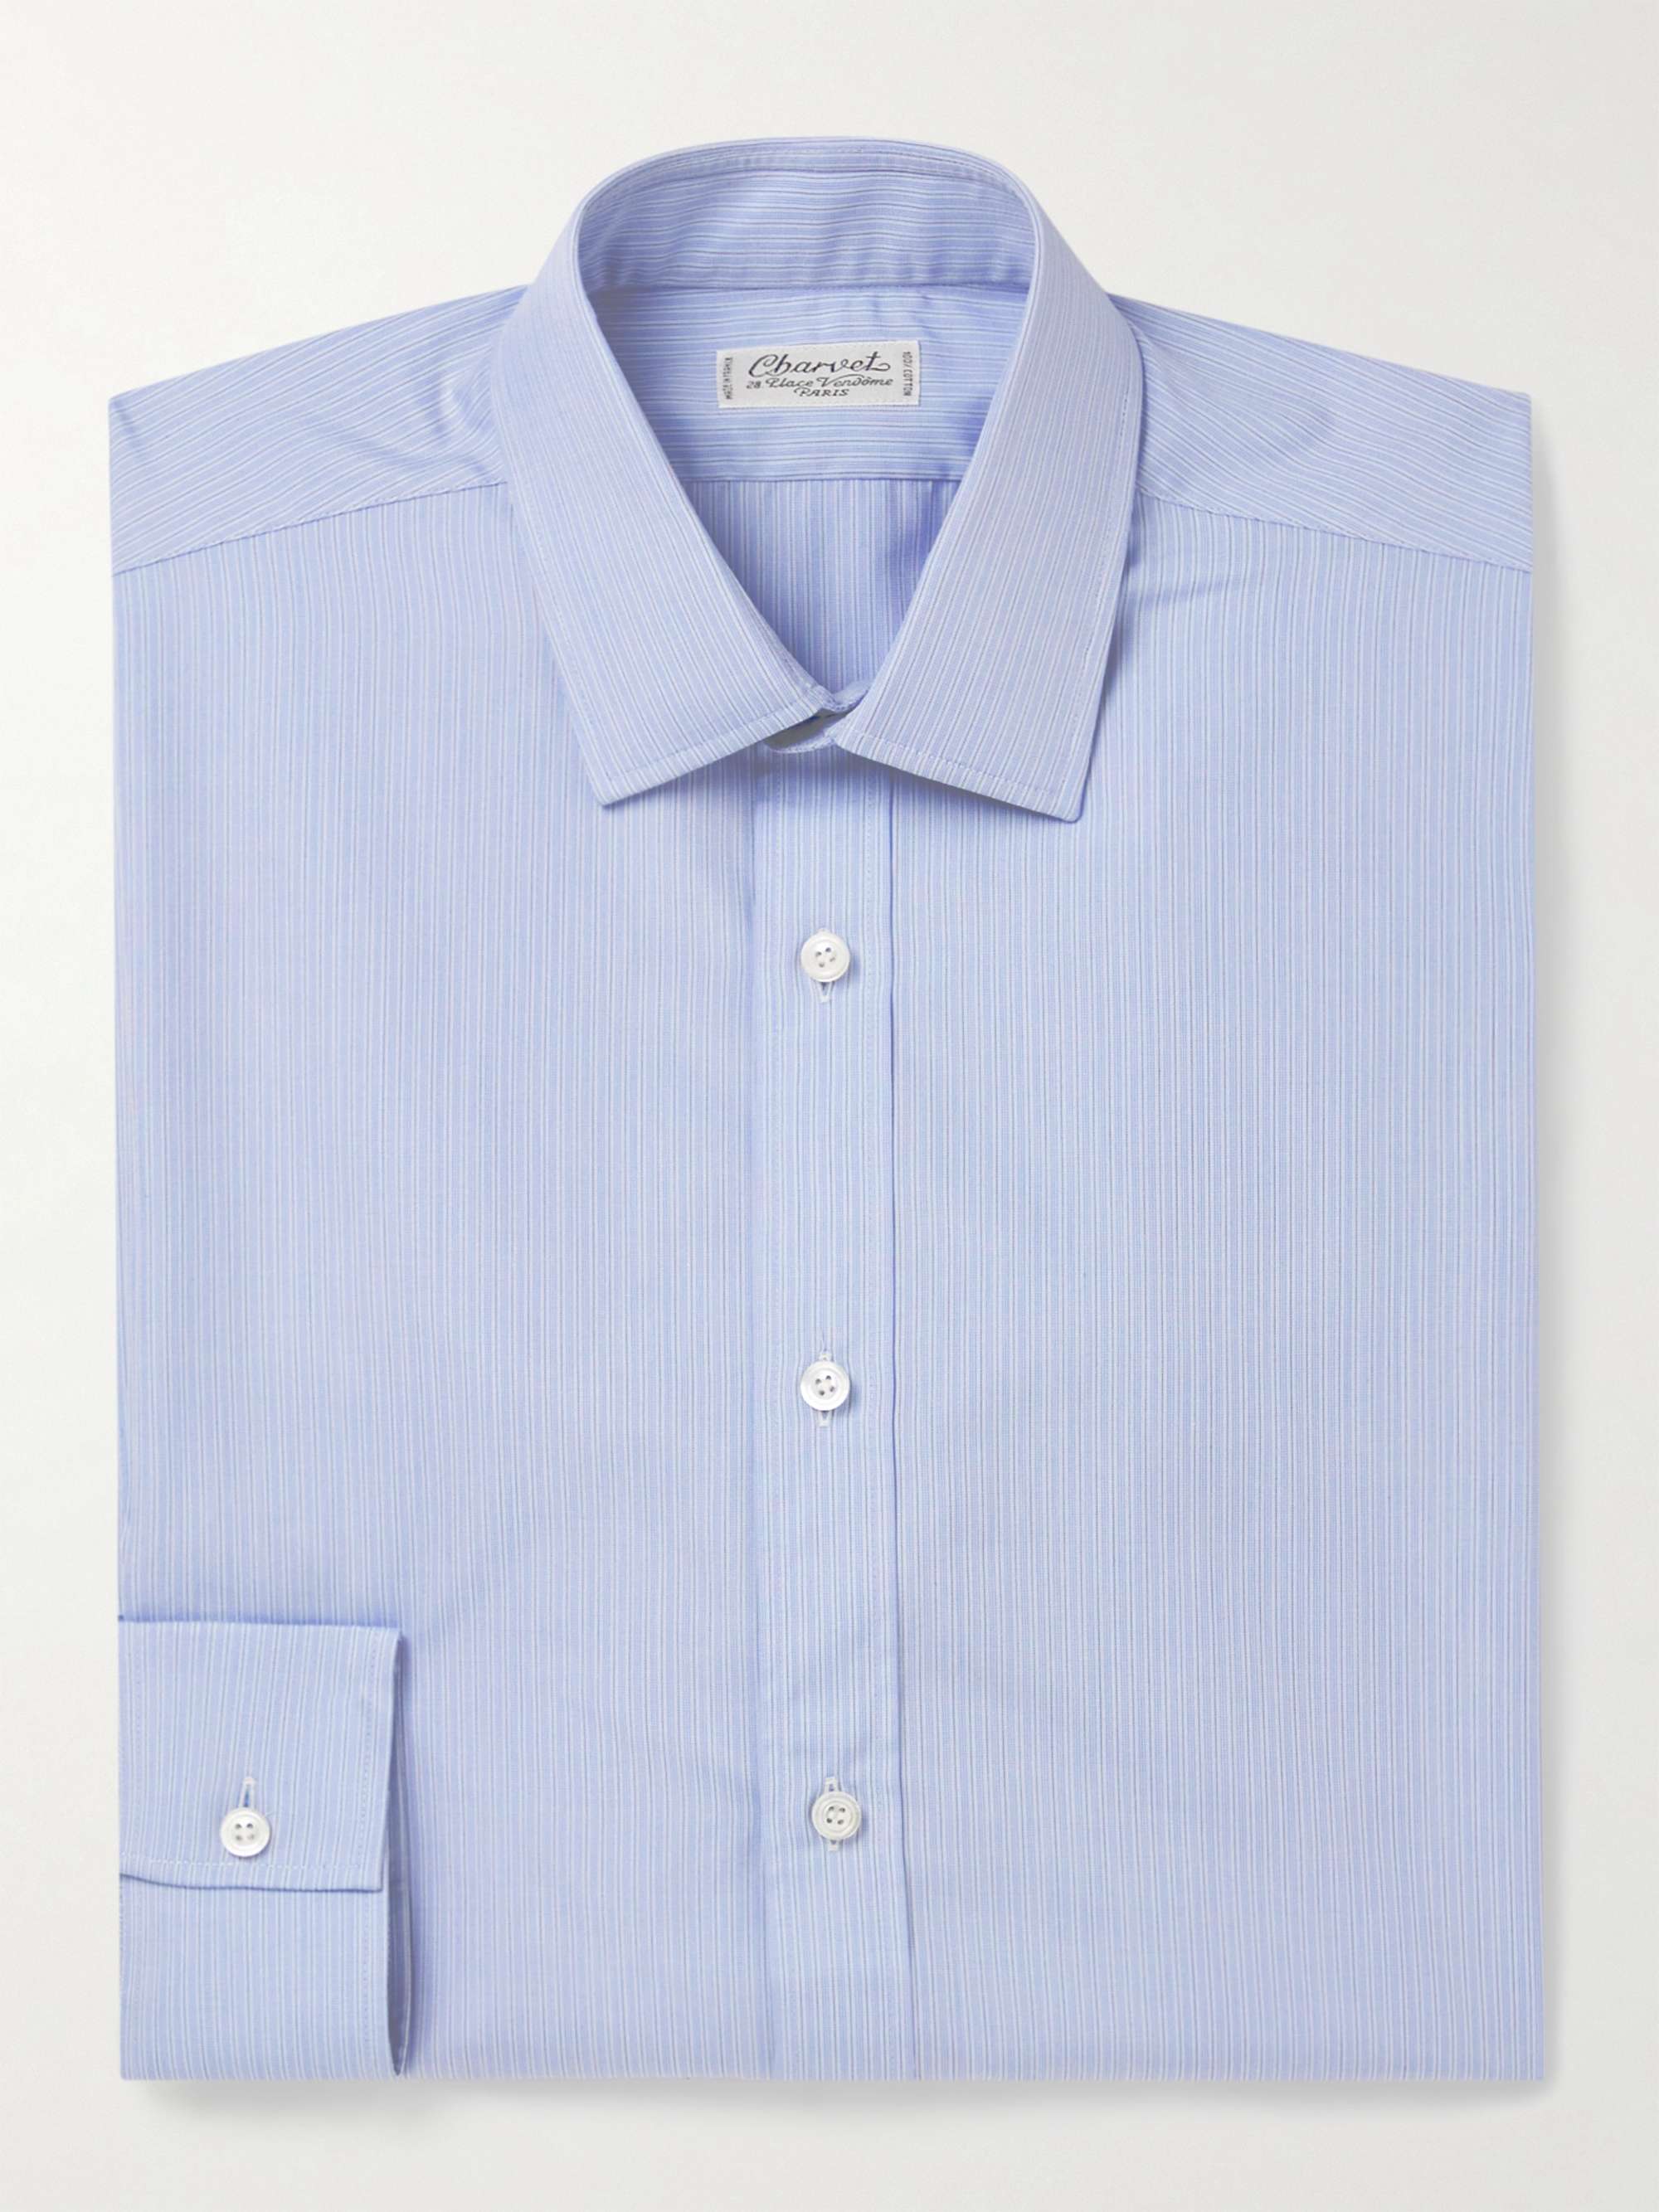 当店在庫だから安心 Made in France Charvet Shirt Blue ① シャツ